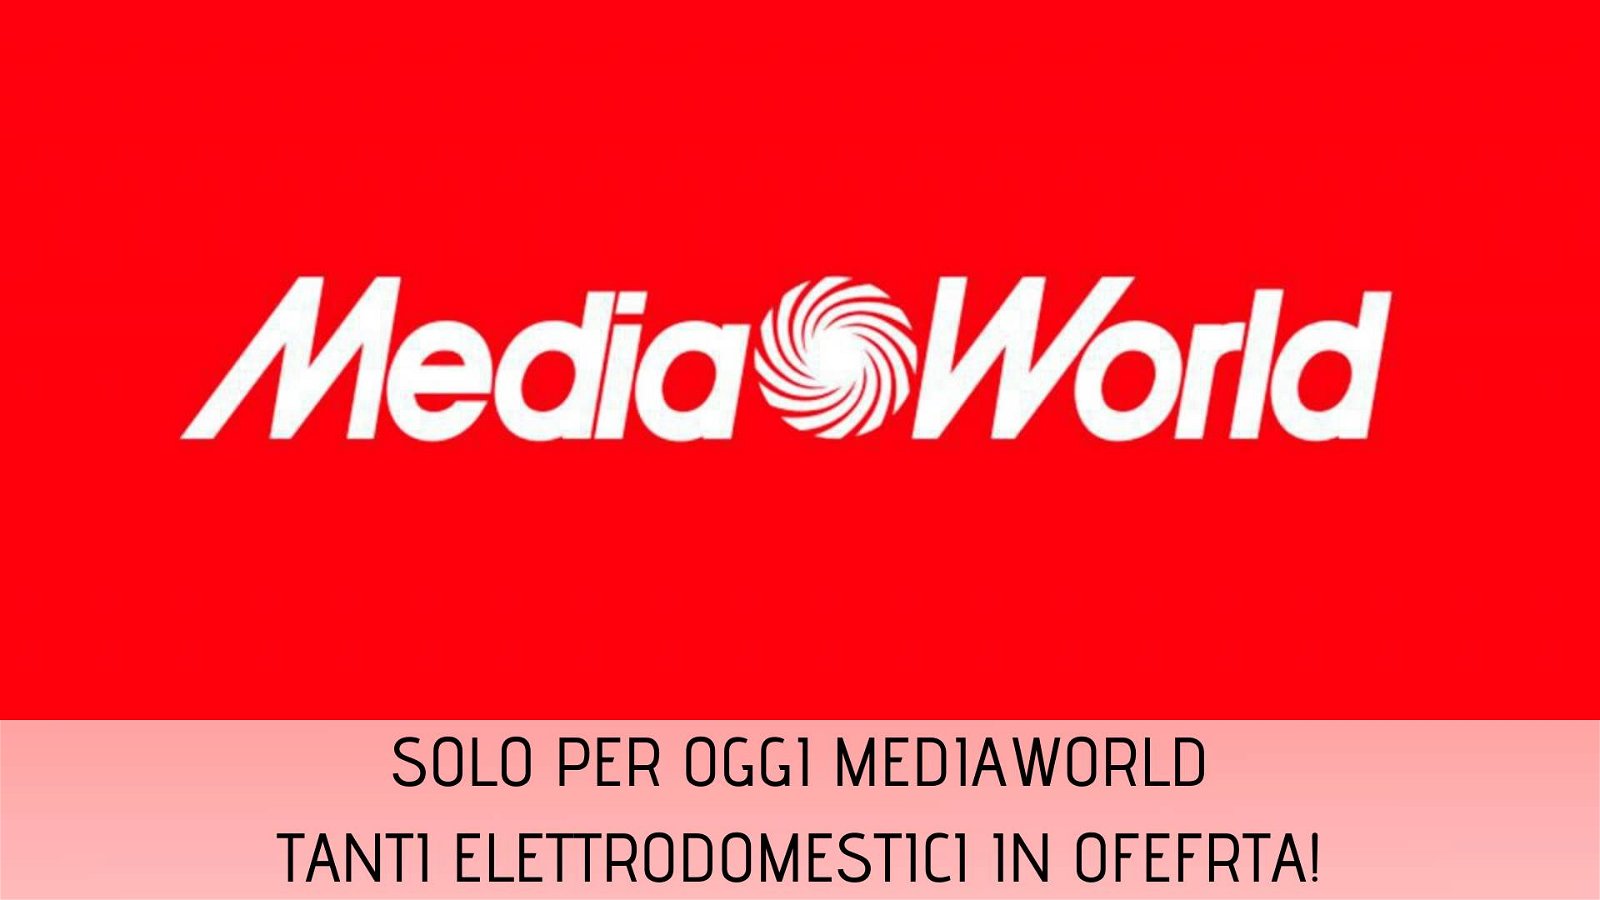 Immagine di Solo per oggi Mediaworld: in sconto elettrodomestici e tanto altro!